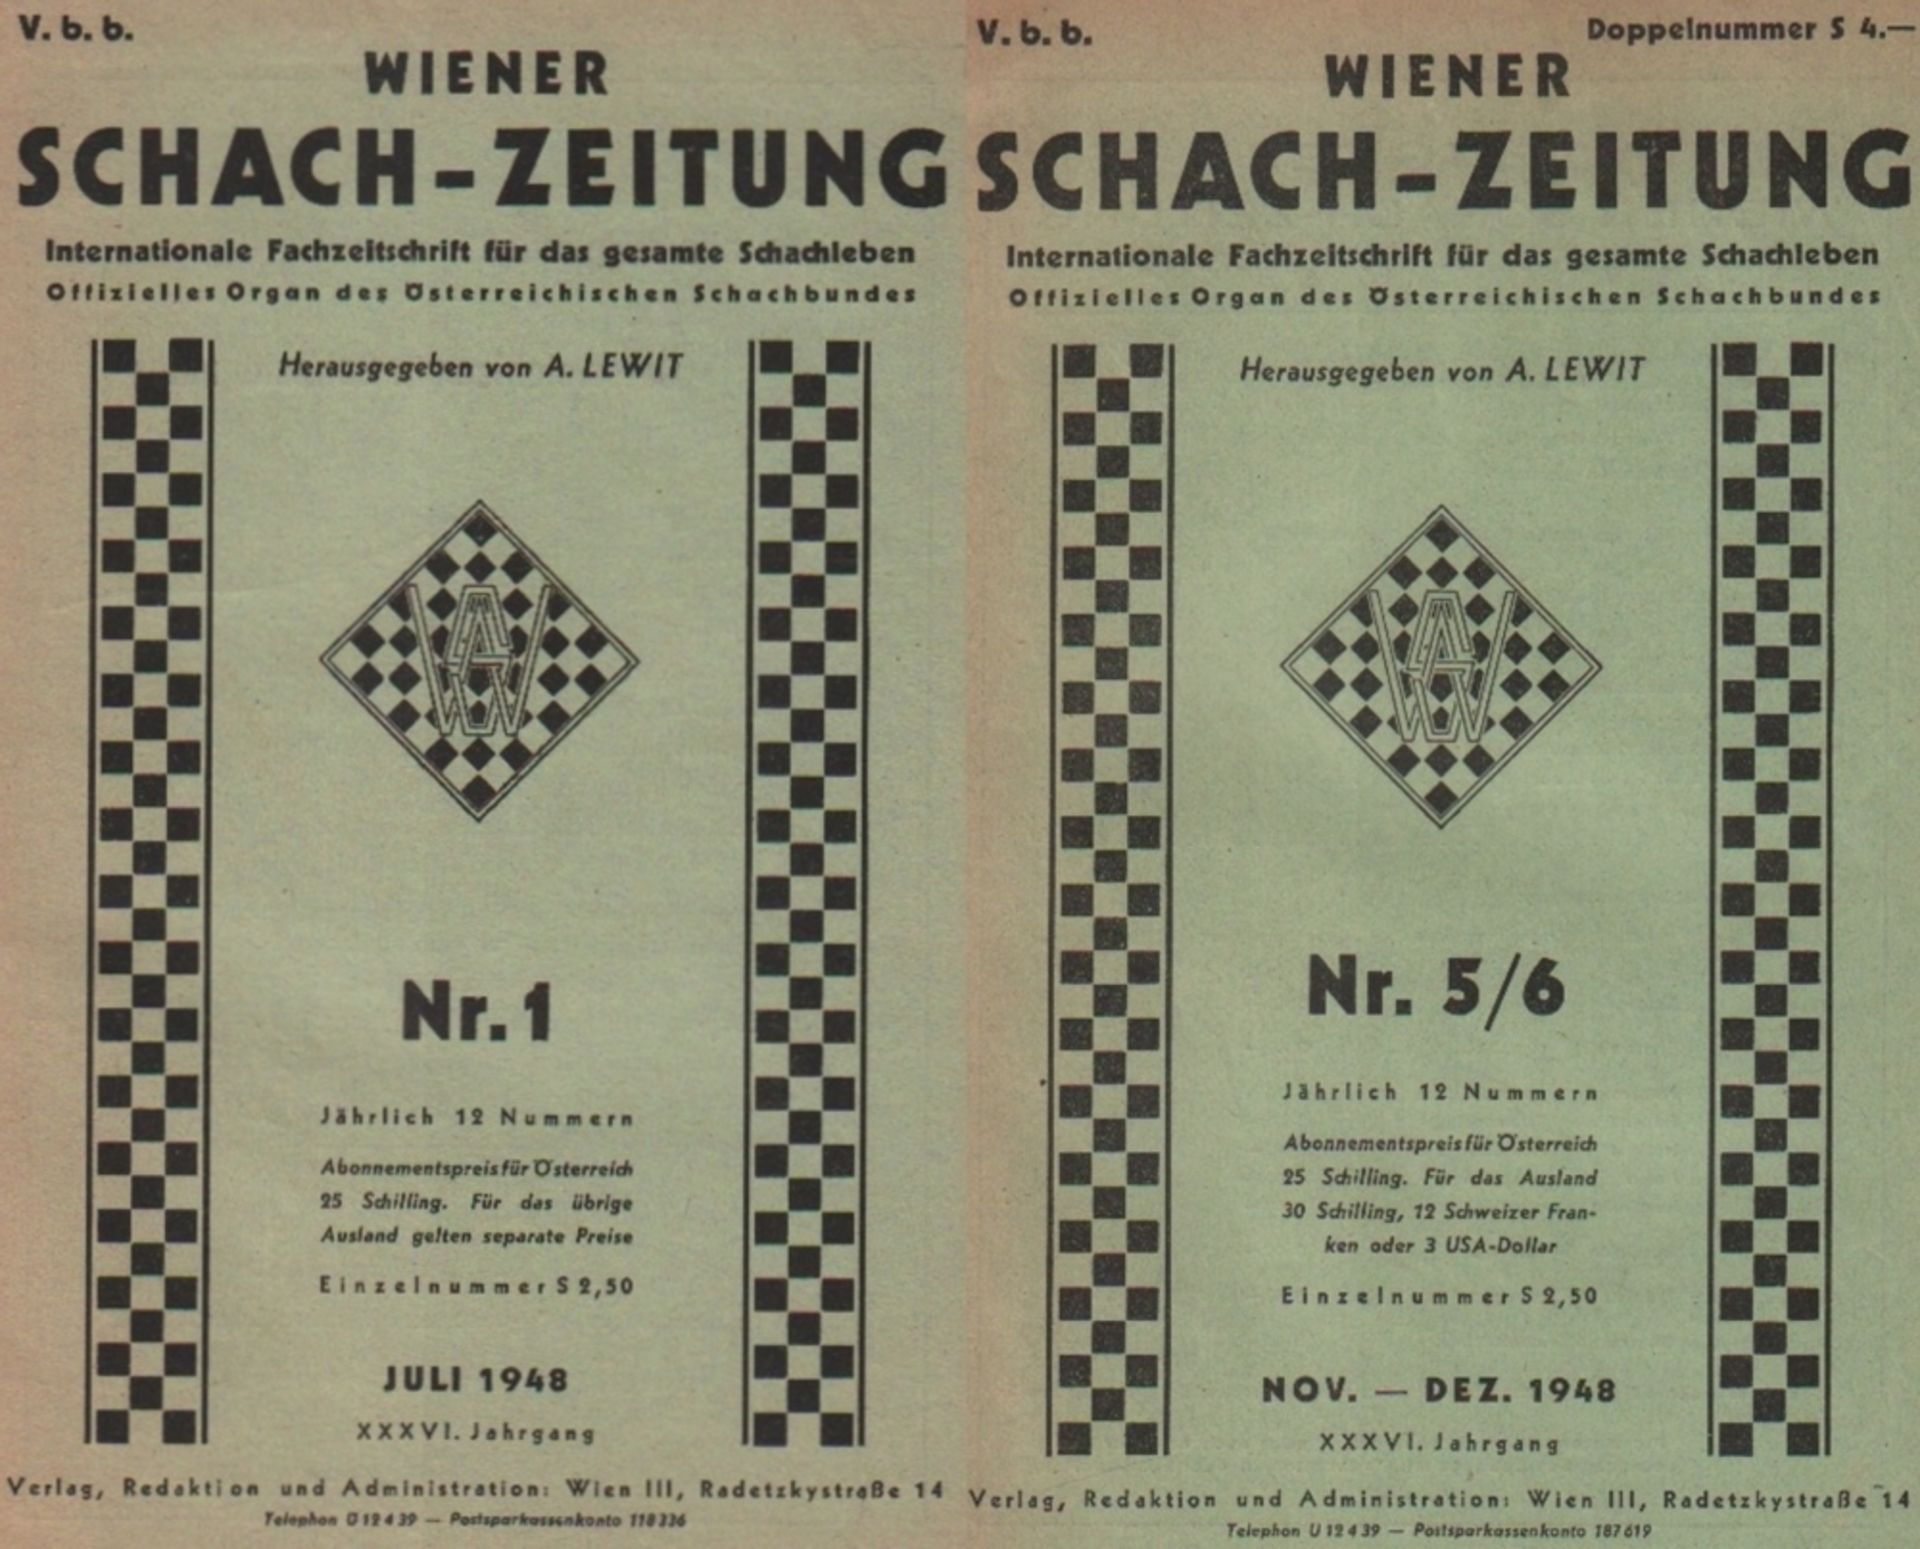 Wiener Schach - Zeitung. Fachzeitschrift für das gesamte Schachleben. Chefredakteur: Edwin